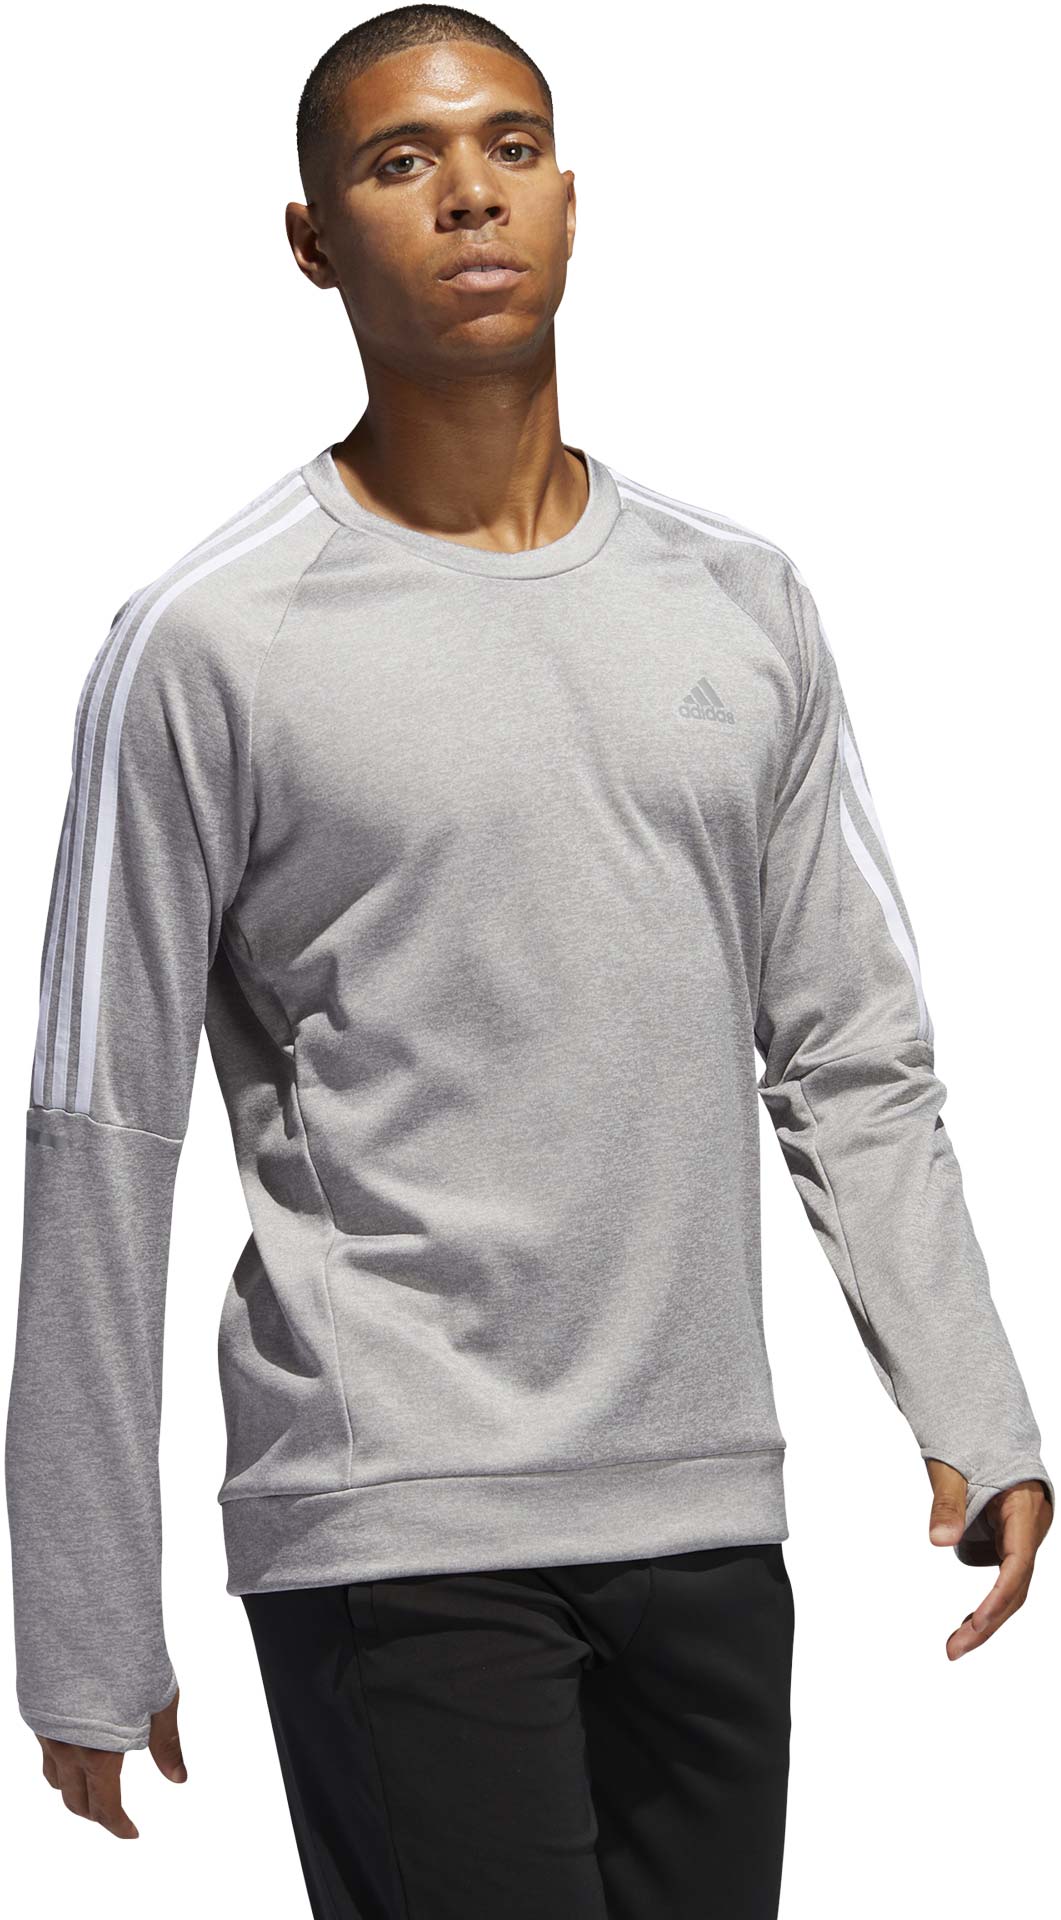 Men's running sweatshirt